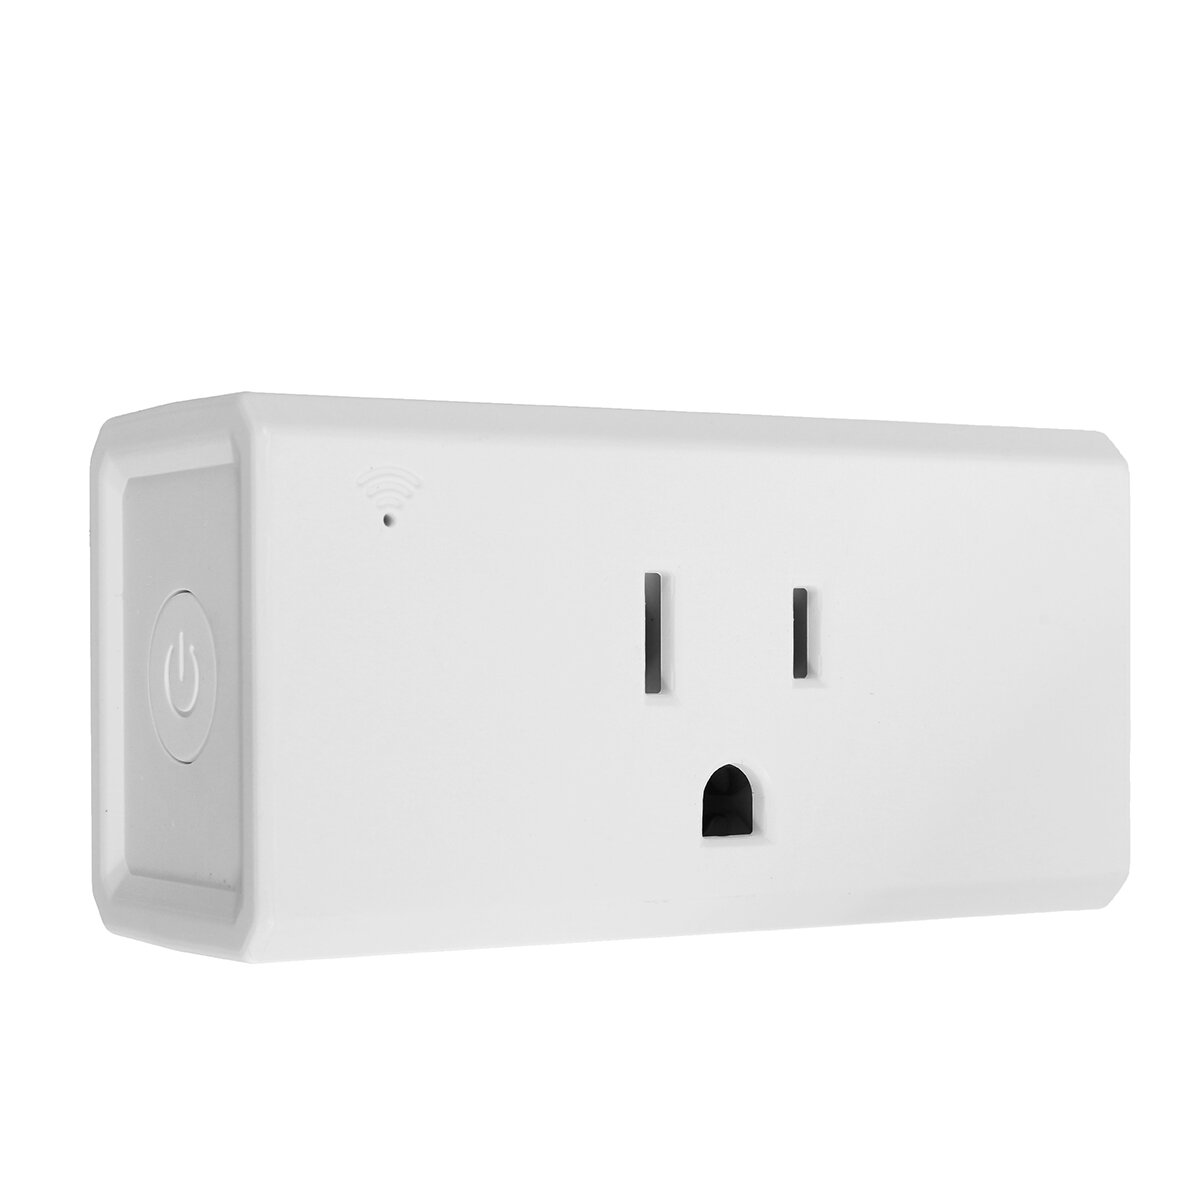 Excellway? Wifi Smart Plug Smart Socket Outlet Compatibel met Alexa en Google Home Voice Control